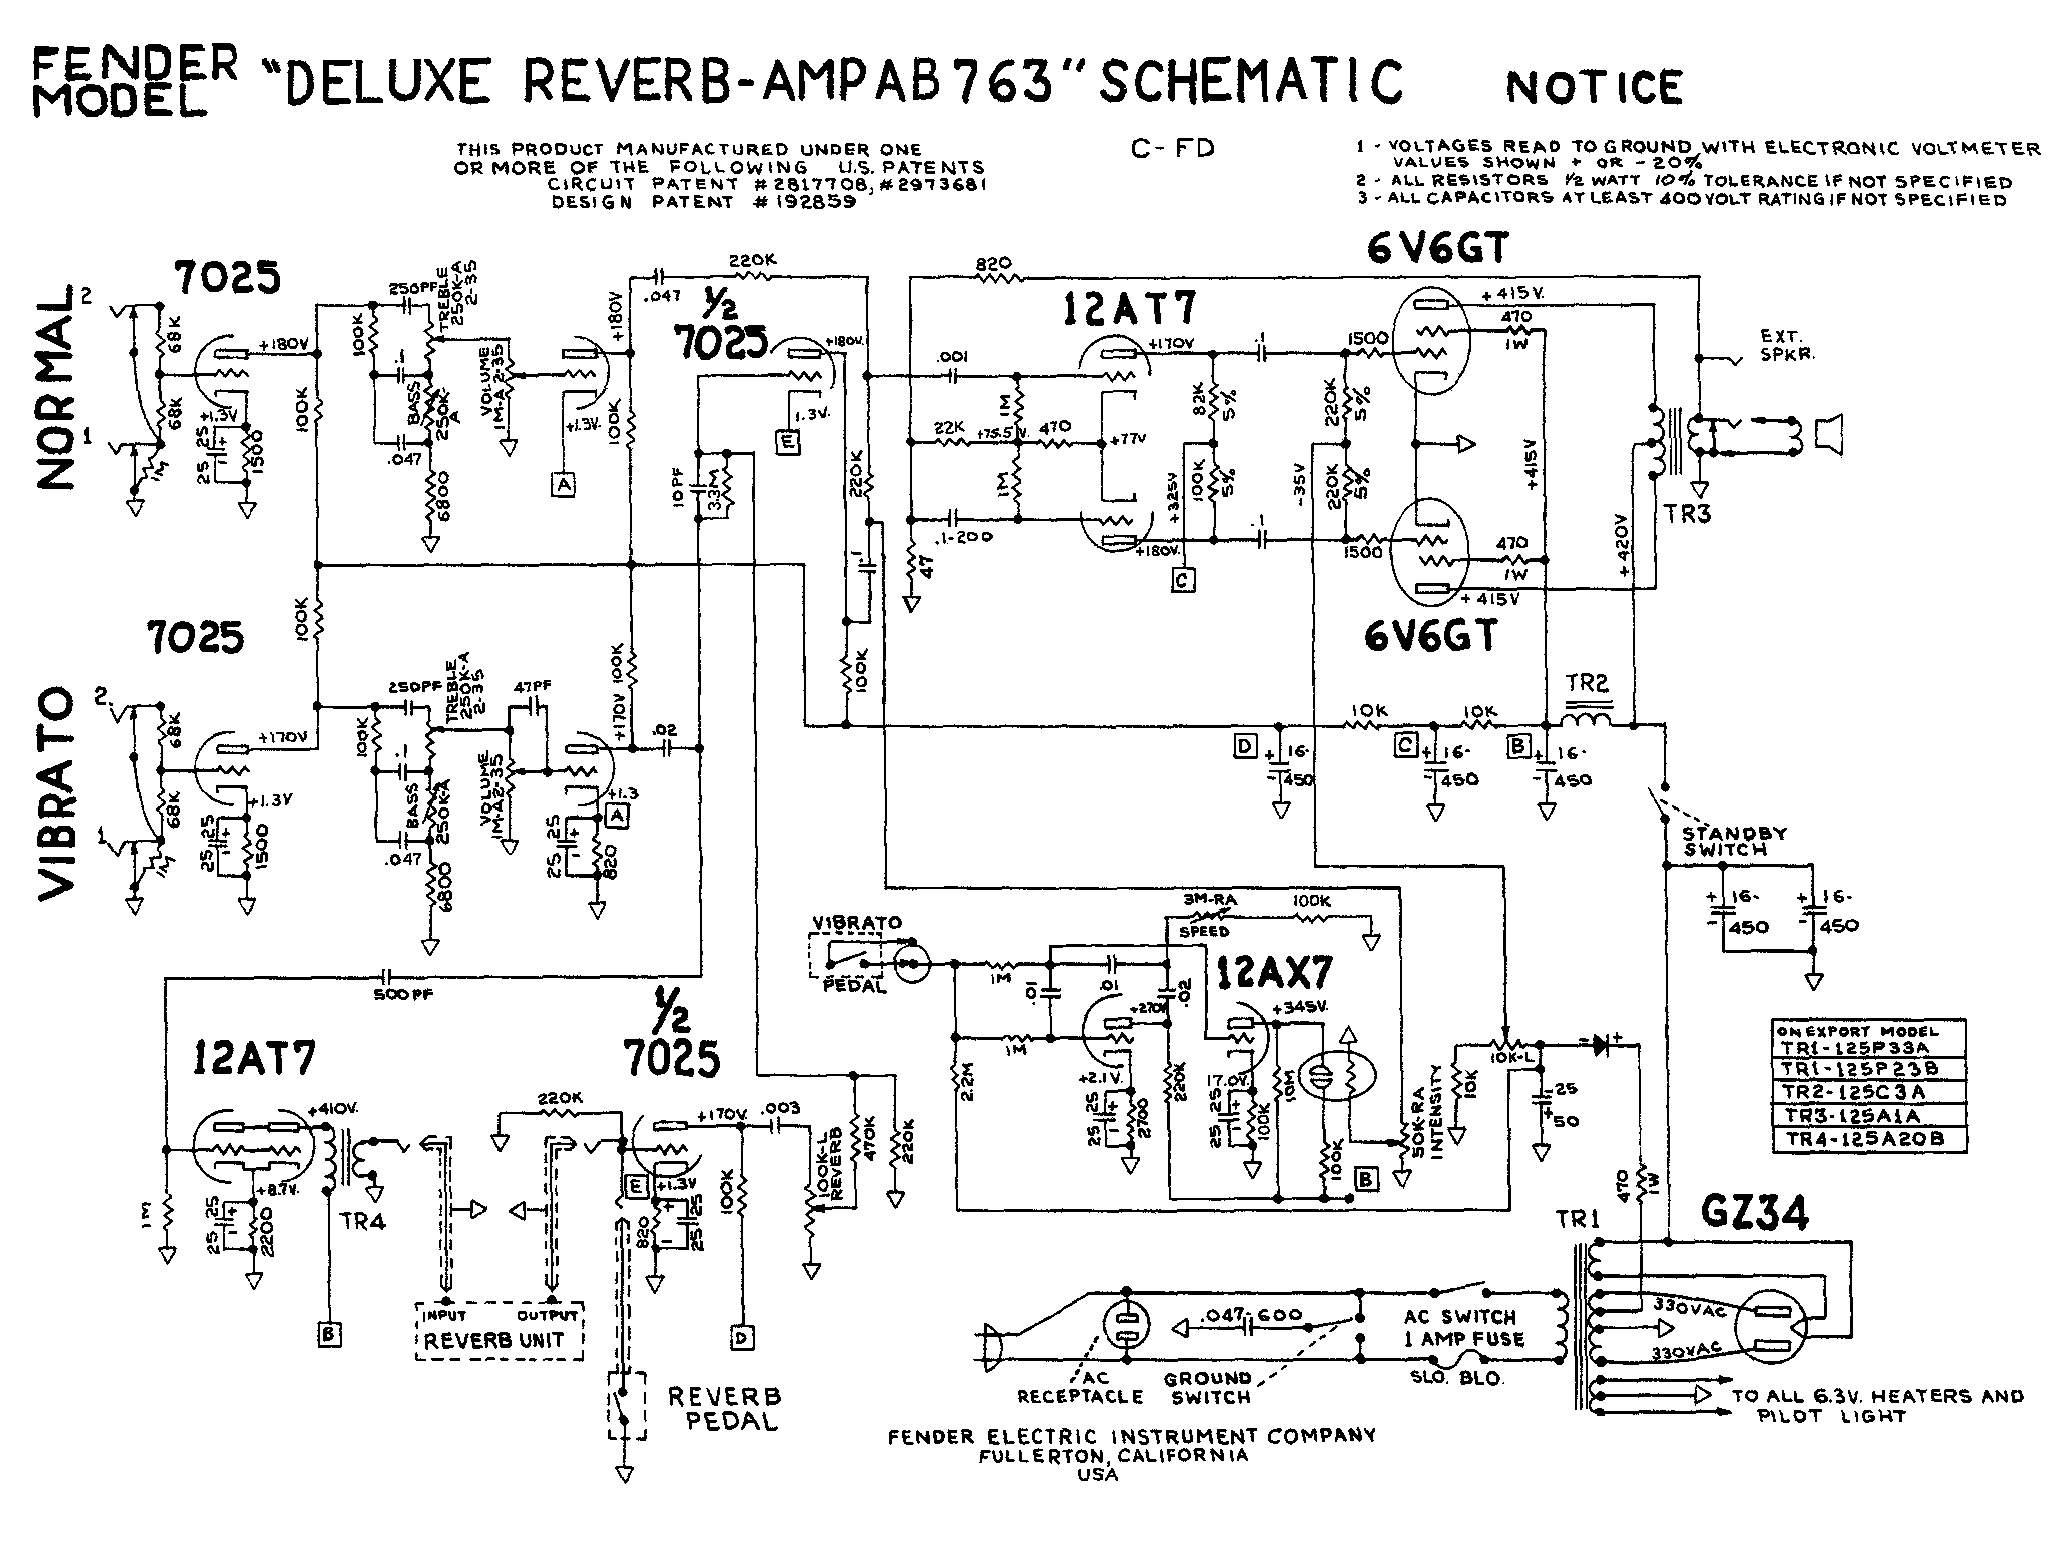 Схема Fender - Deluxe Reverb Amp AB763